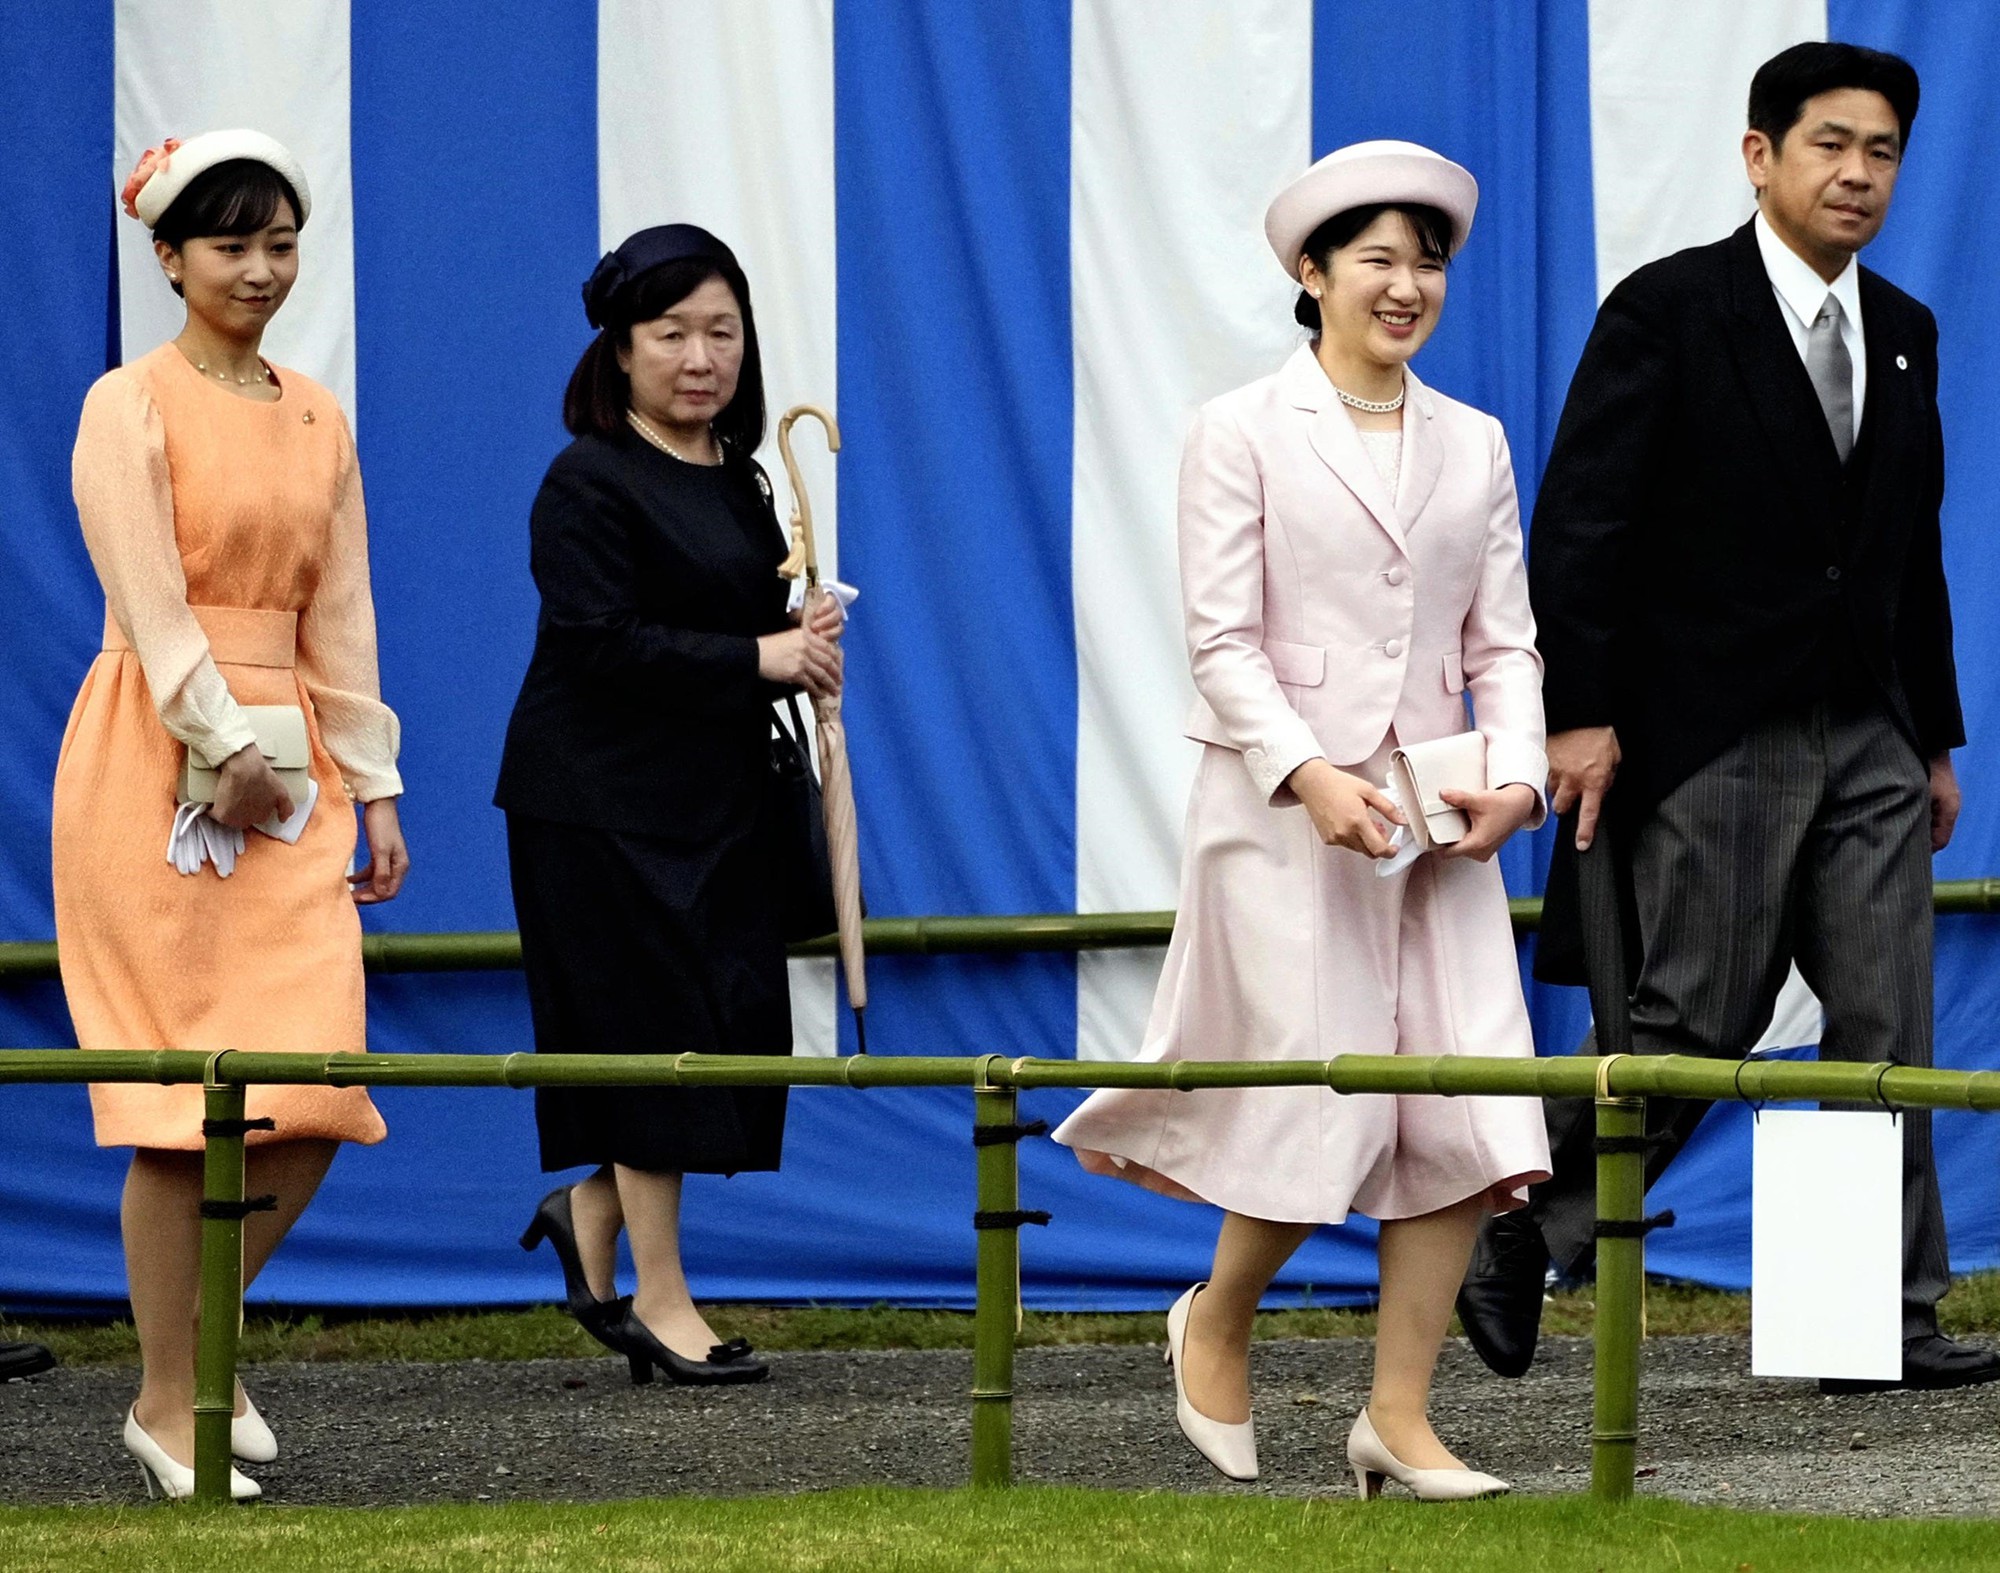 Hoàng gia Nhật Bản tổ chức tiệc mùa xuân: Hai công chúa tươi vui rạng rỡ chiếm trọn spotlight giữa sự kiện 1.400 người - Ảnh 4.